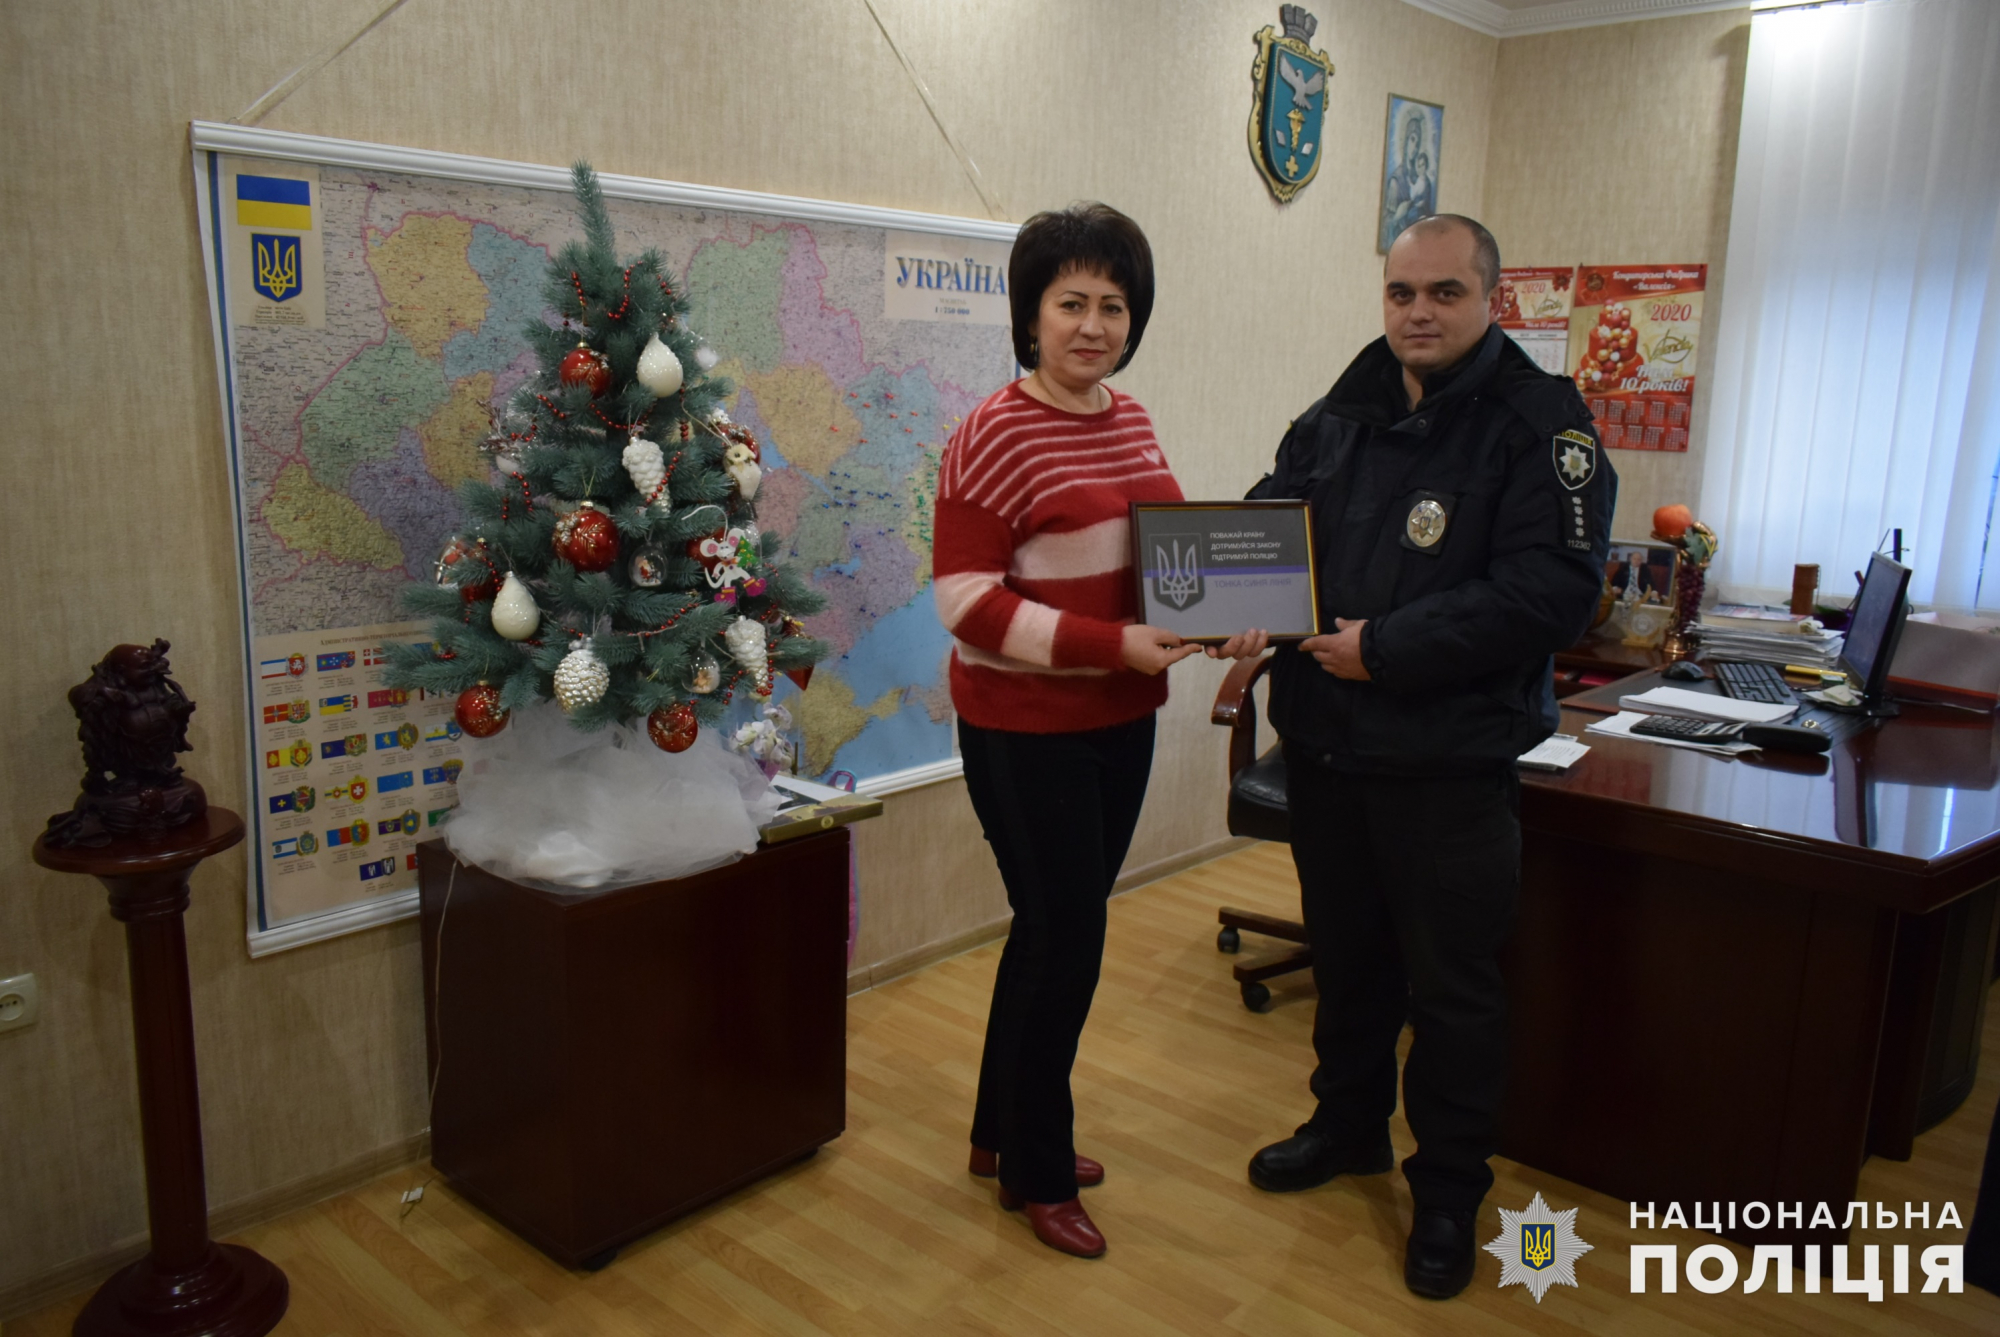 Славянская кондитерская фабрика получила награду "Тонкая синяя линия"